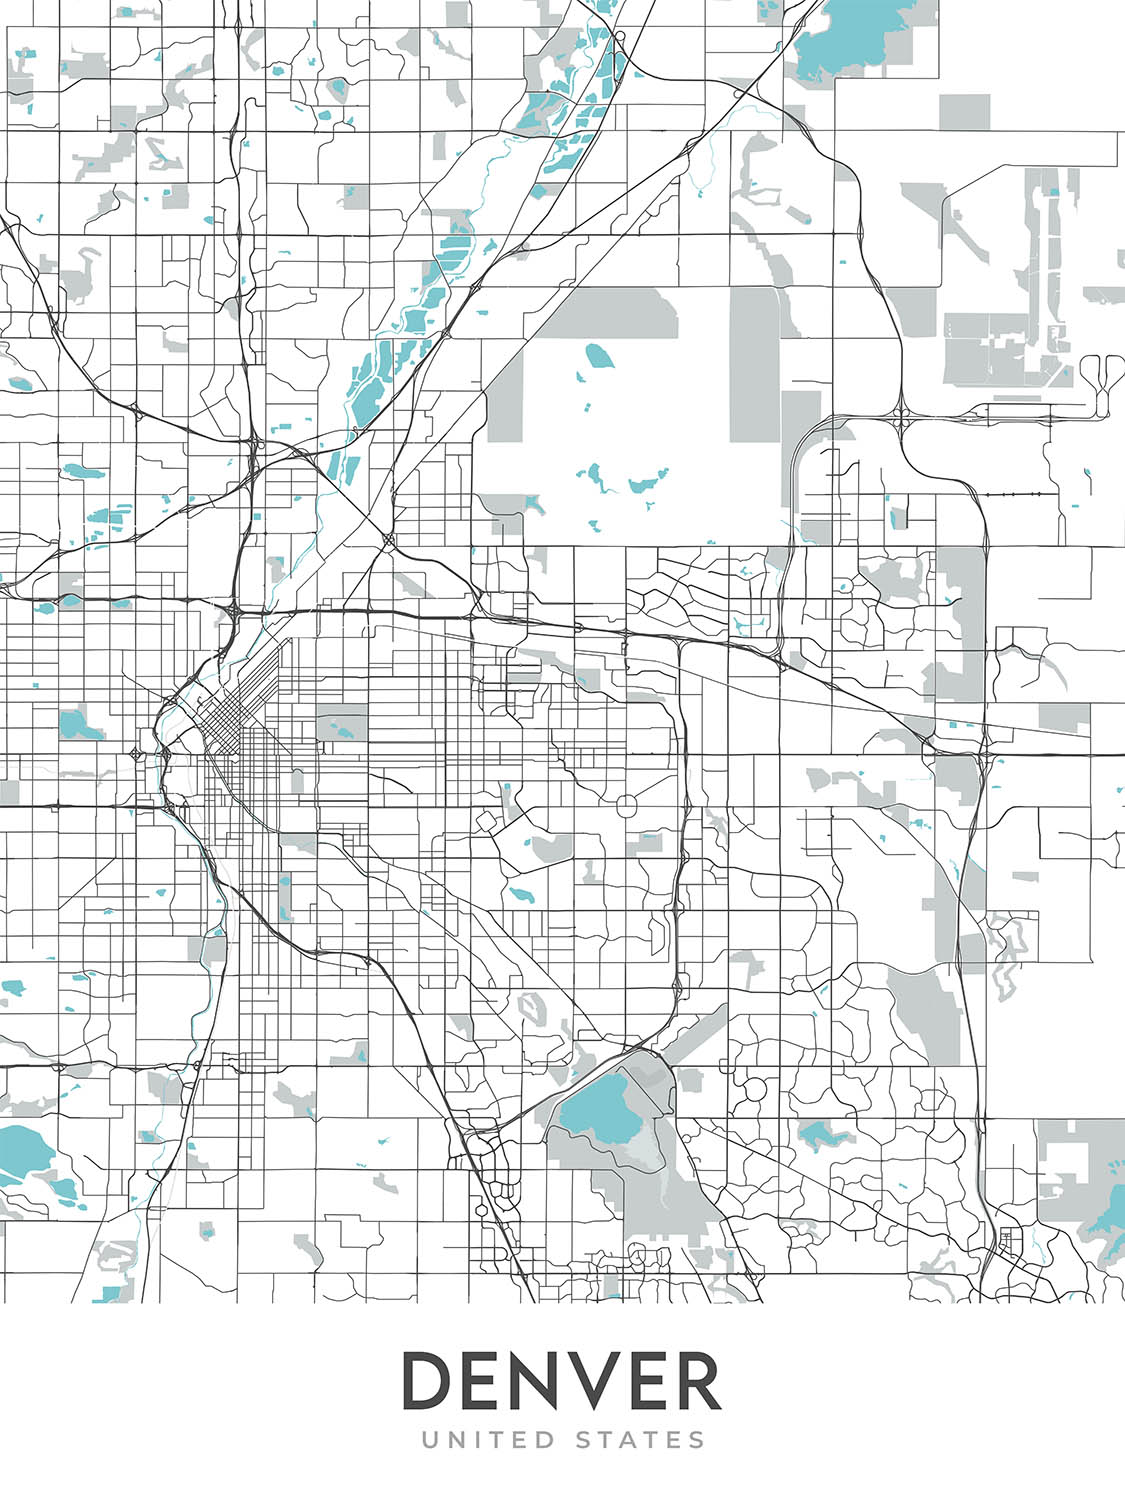 Moderner Stadtplan von Denver, CO: Red Rocks, City Park, Larimer Sq, Highlands, Capitol Hill